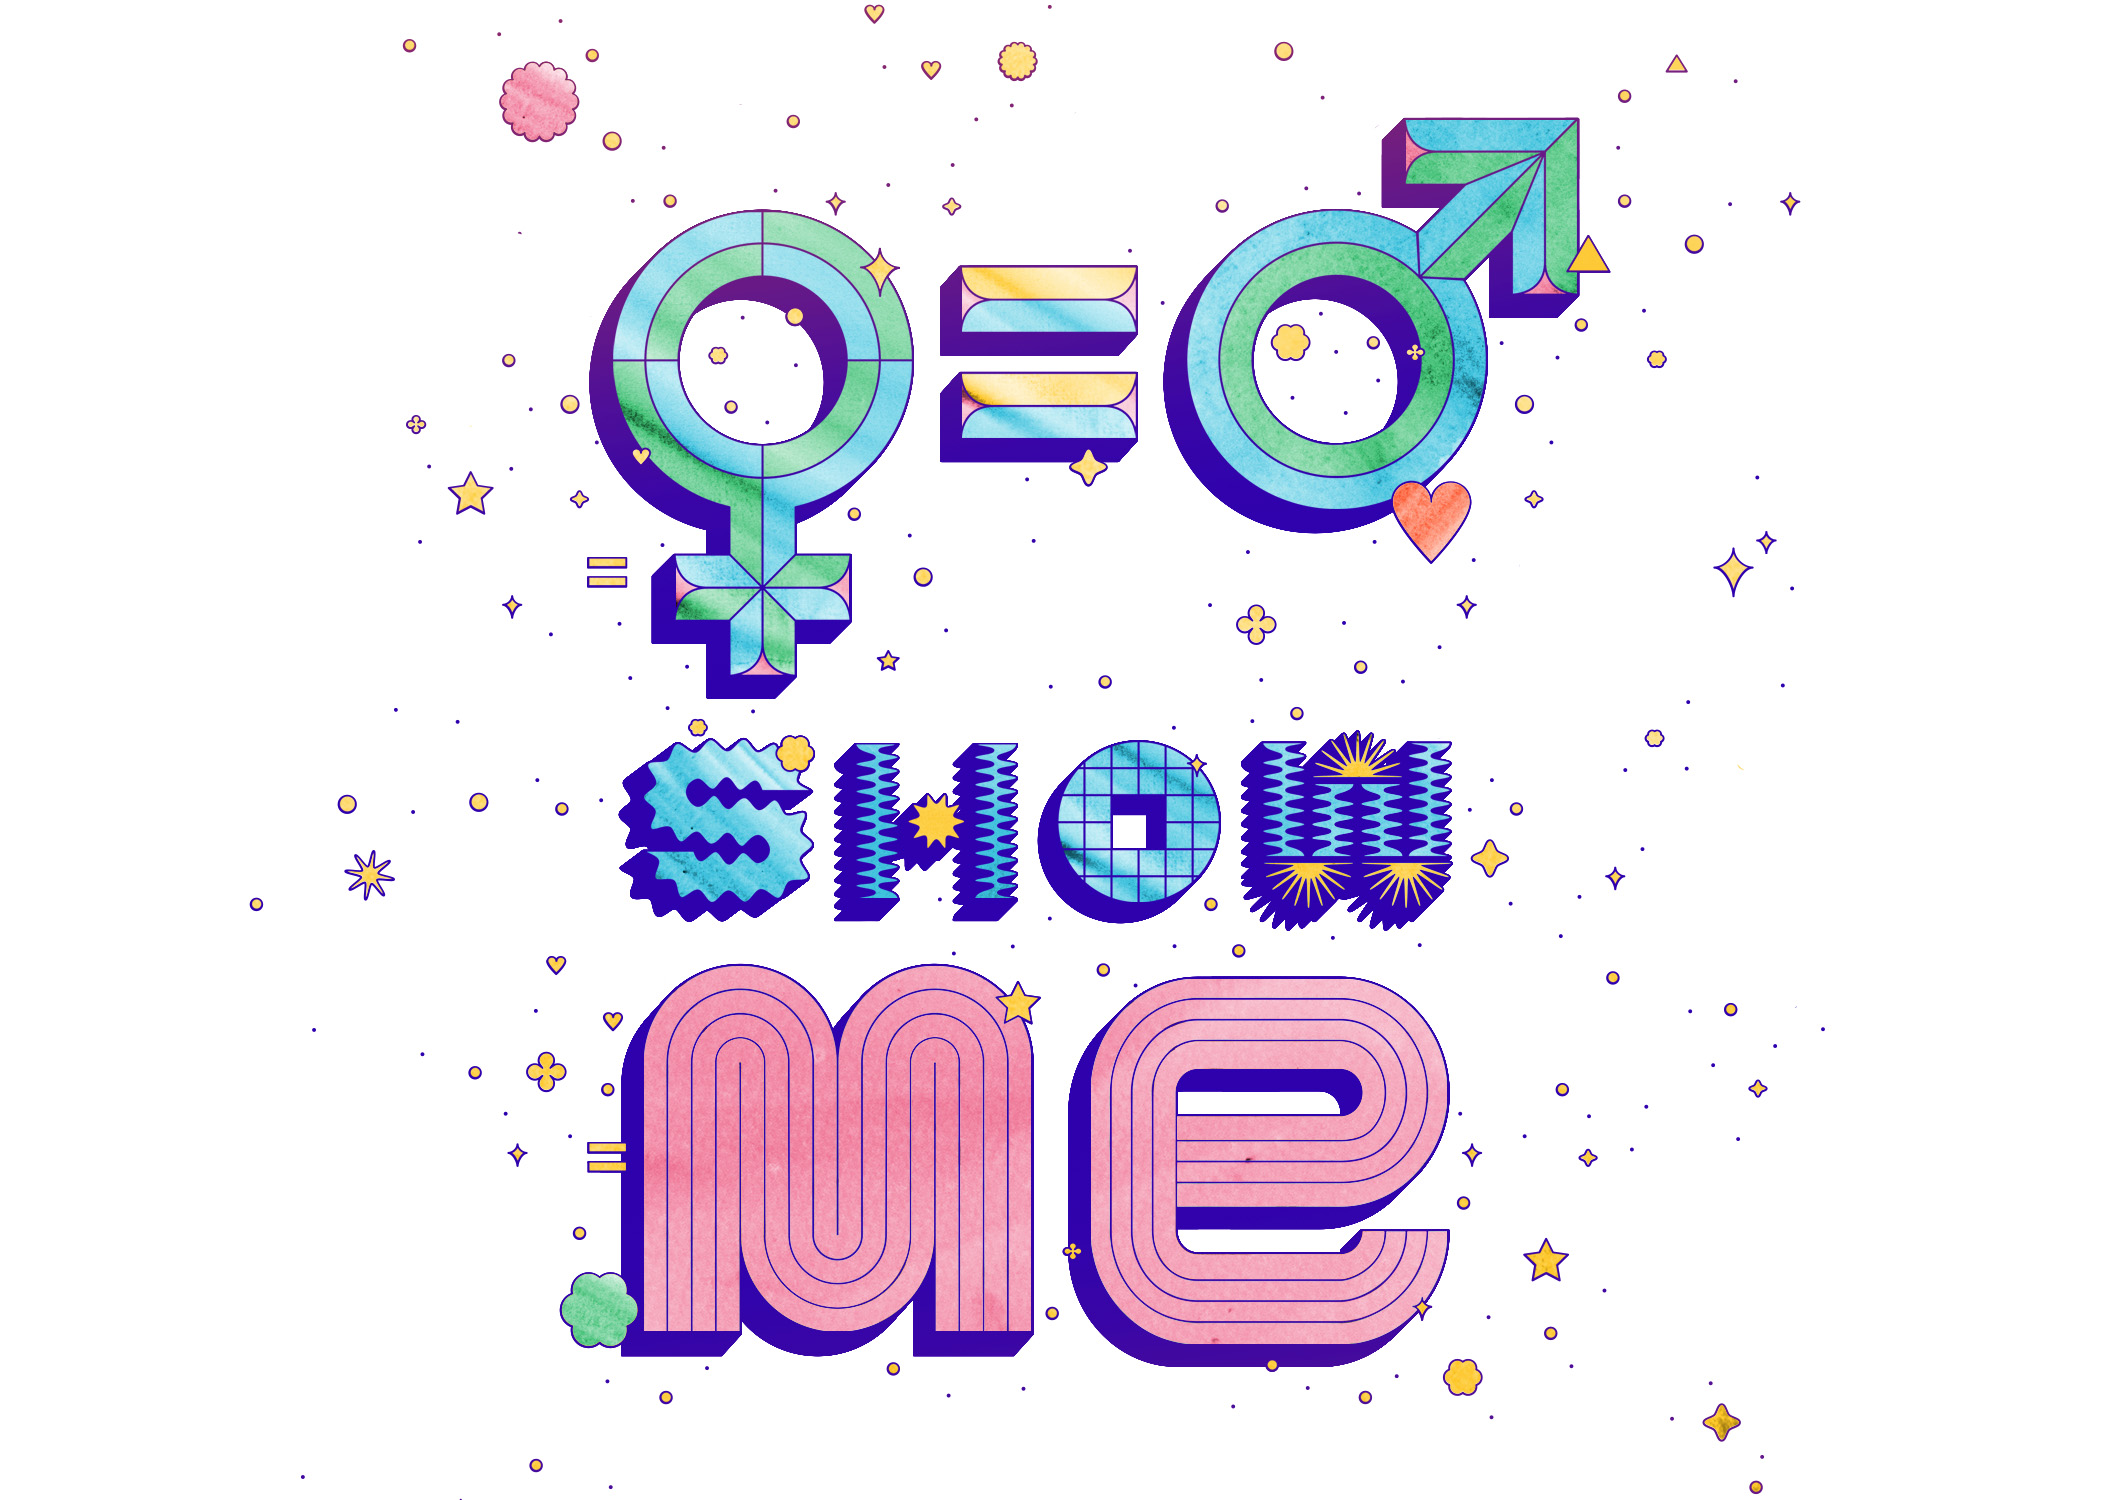 Affiche égalité femmes-hommes pour la soirée "Show Me".